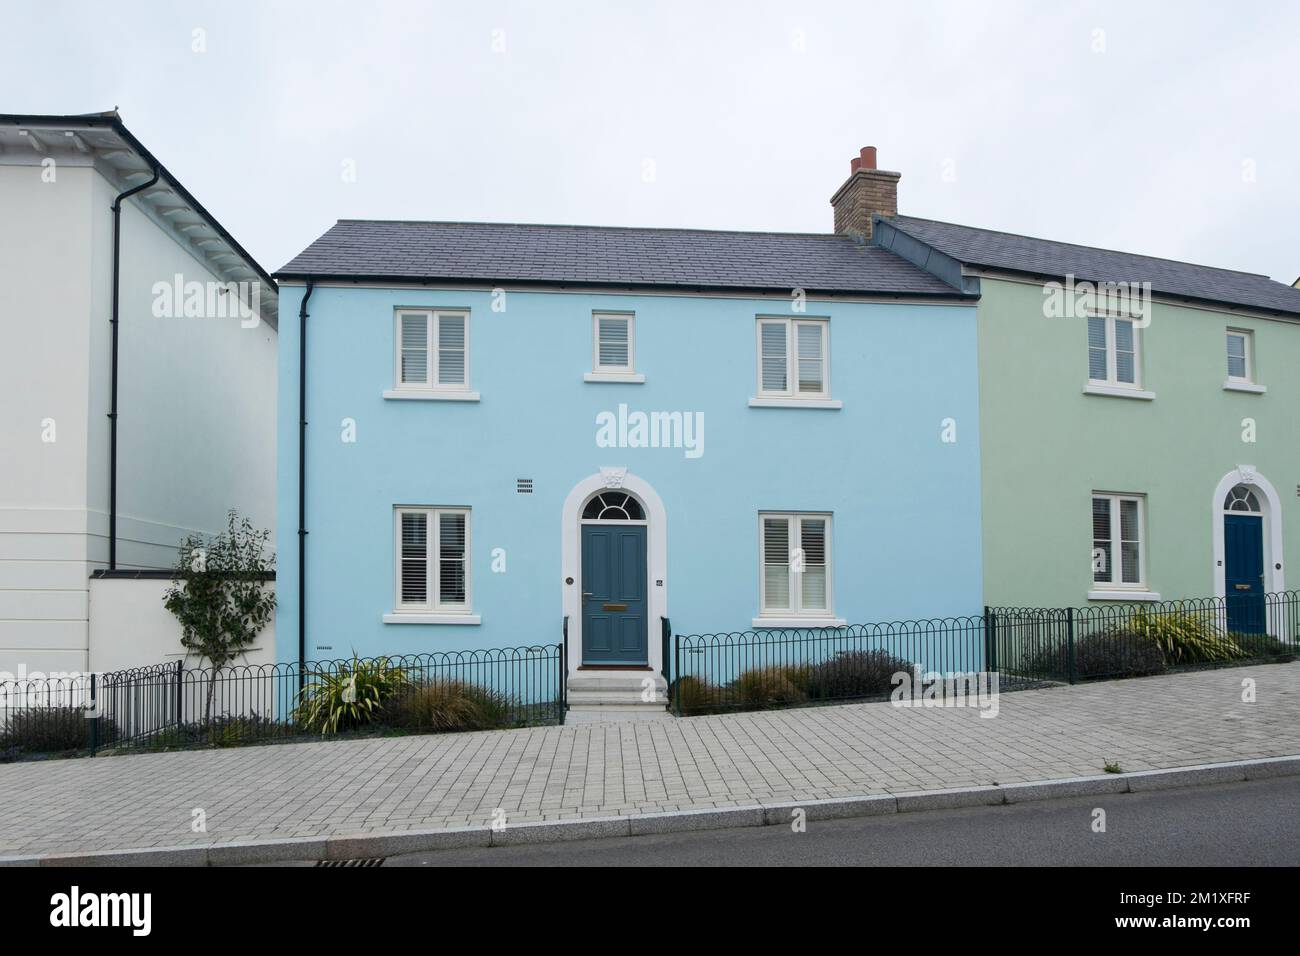 Blau-grüne, halbgetrennte Hütten auf der Straße Kosti Veur Woles, Nansledan, eine Entwicklung des Herzogtums Cornwall in Newquay, Südwestengland, Großbritannien Stockfoto